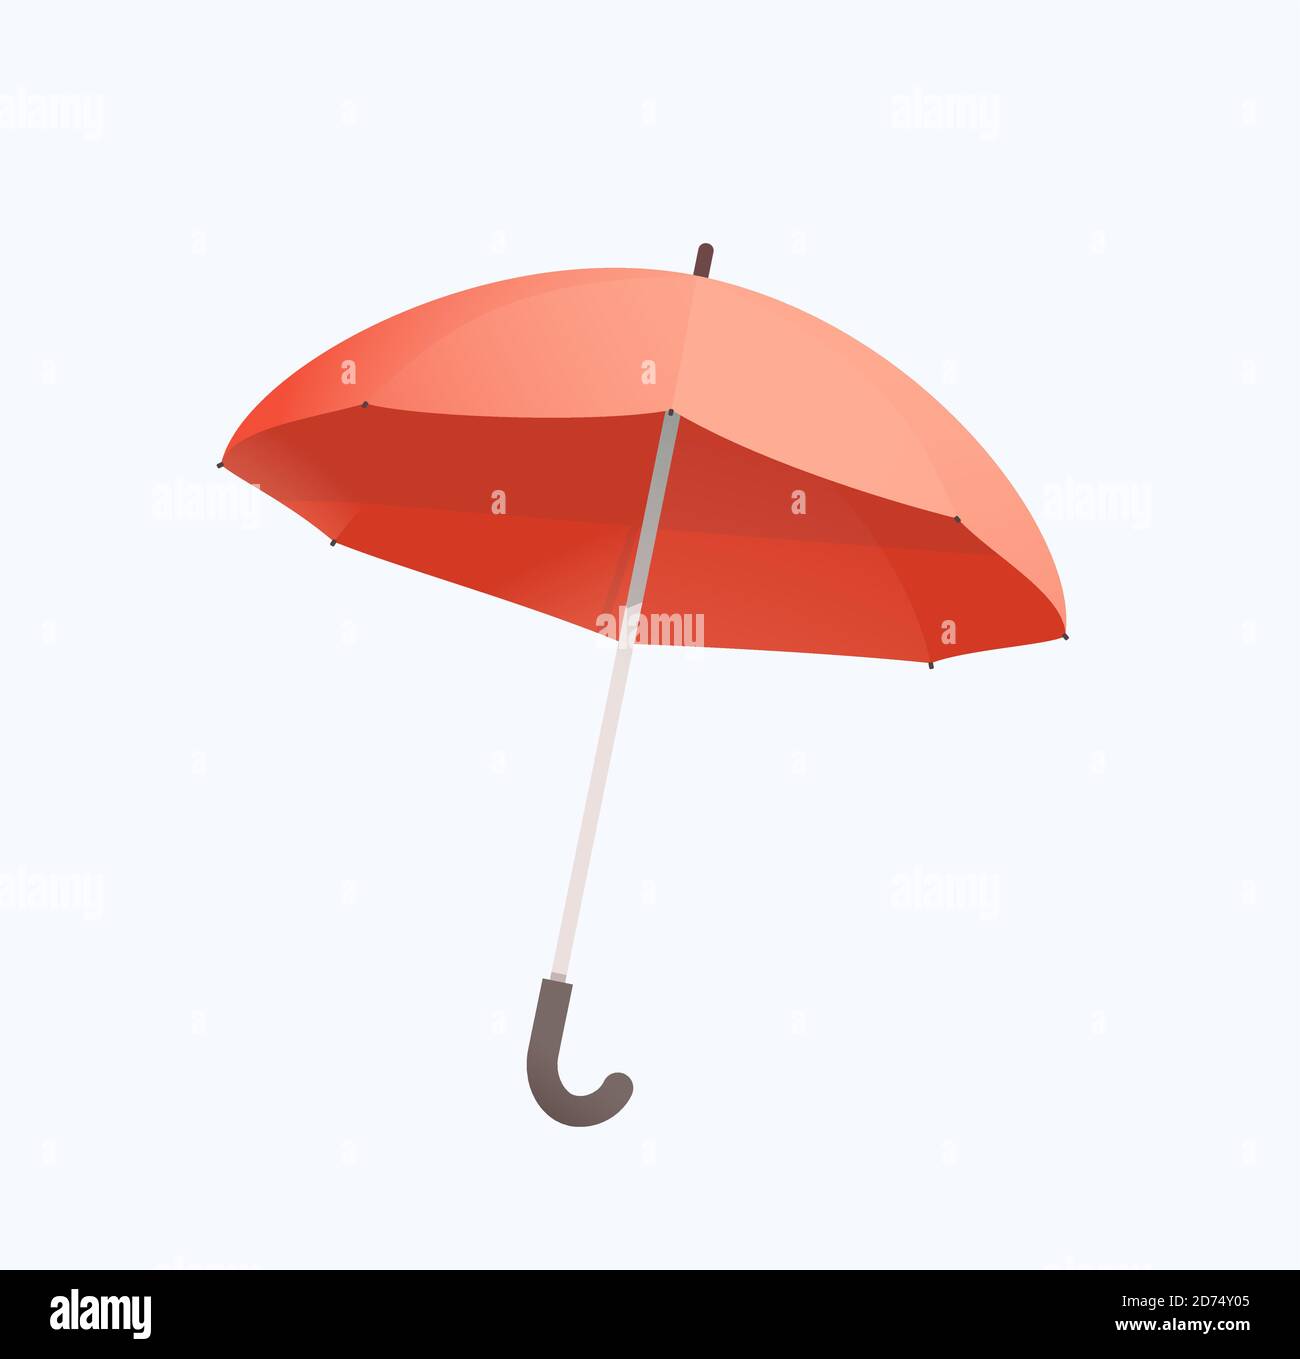 Paraguas rojo aislado objeto sobre blanco. Diseño plano y realista con sombras. Ilustración del Vector